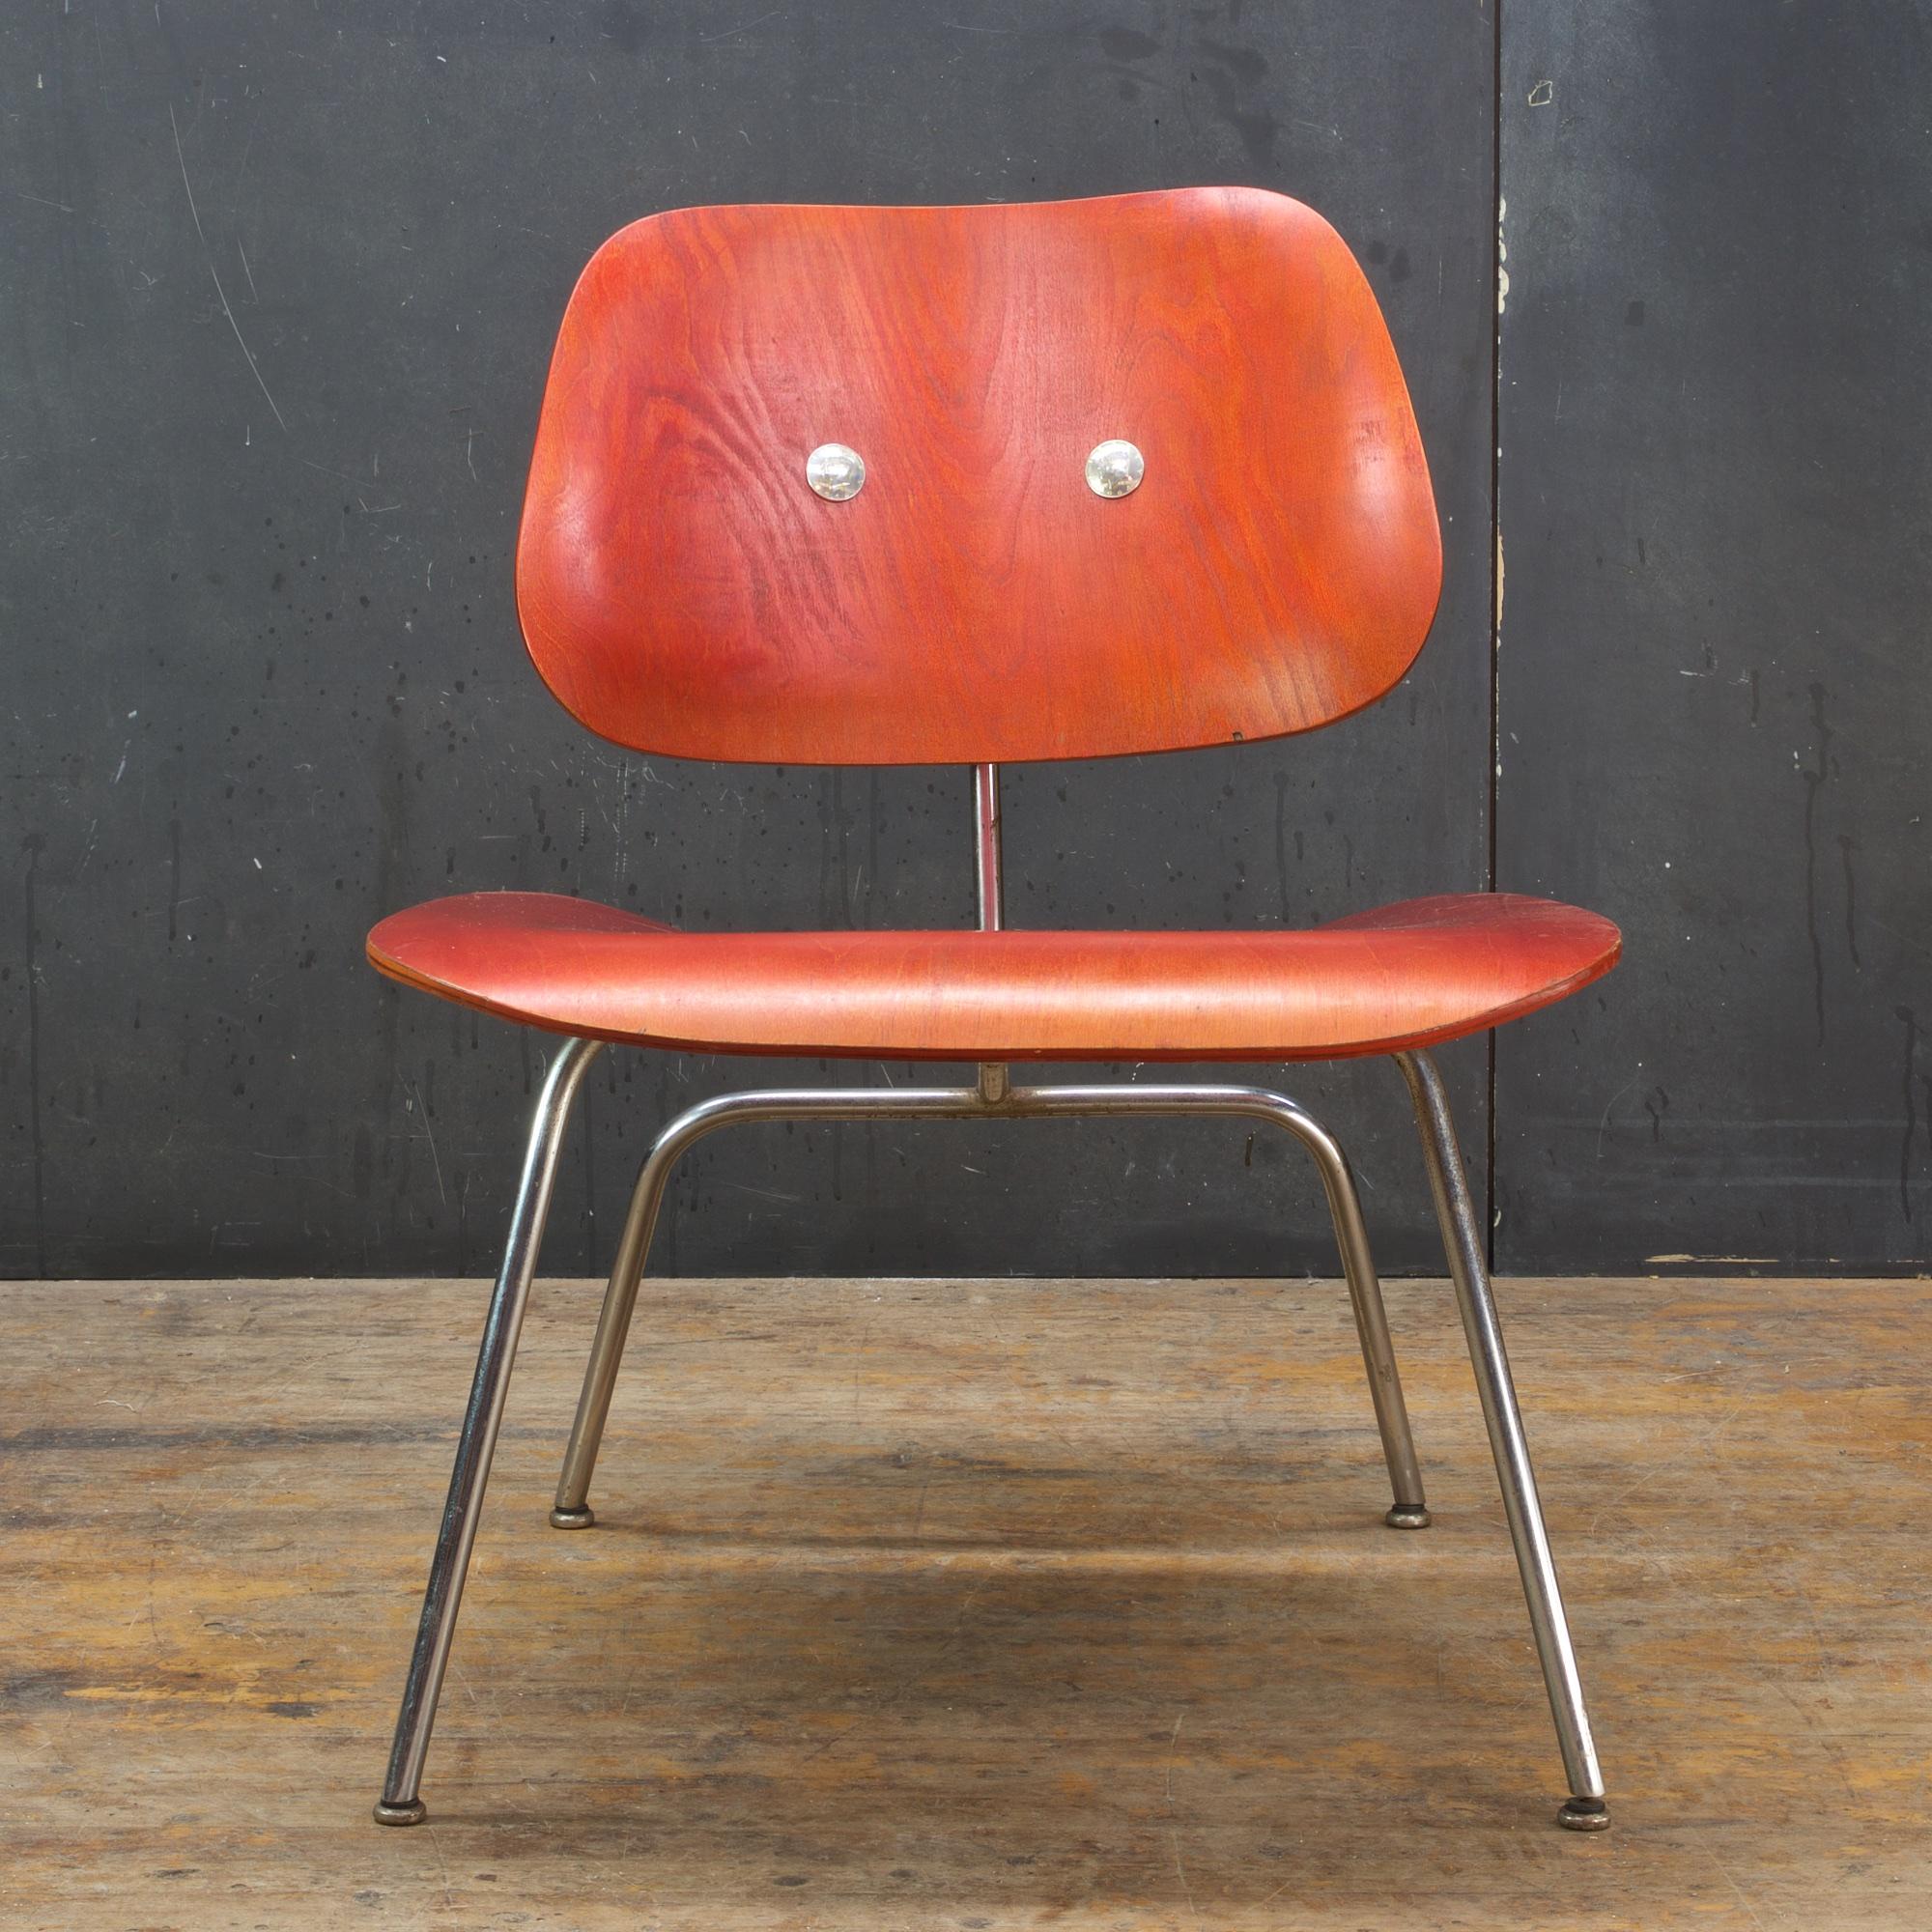 Diese Vintage 1940er-1950er Eames LCM Stuhl, der unrestauriert ist, die zurück Gummihalterungen wurden durchgebohrt, um die Rückenlehne zu verbinden. Dies ist ein voll funktionsfähiger Stuhl wie abgebildet.

Wir benutzten silberne 1964 Kennedy Half